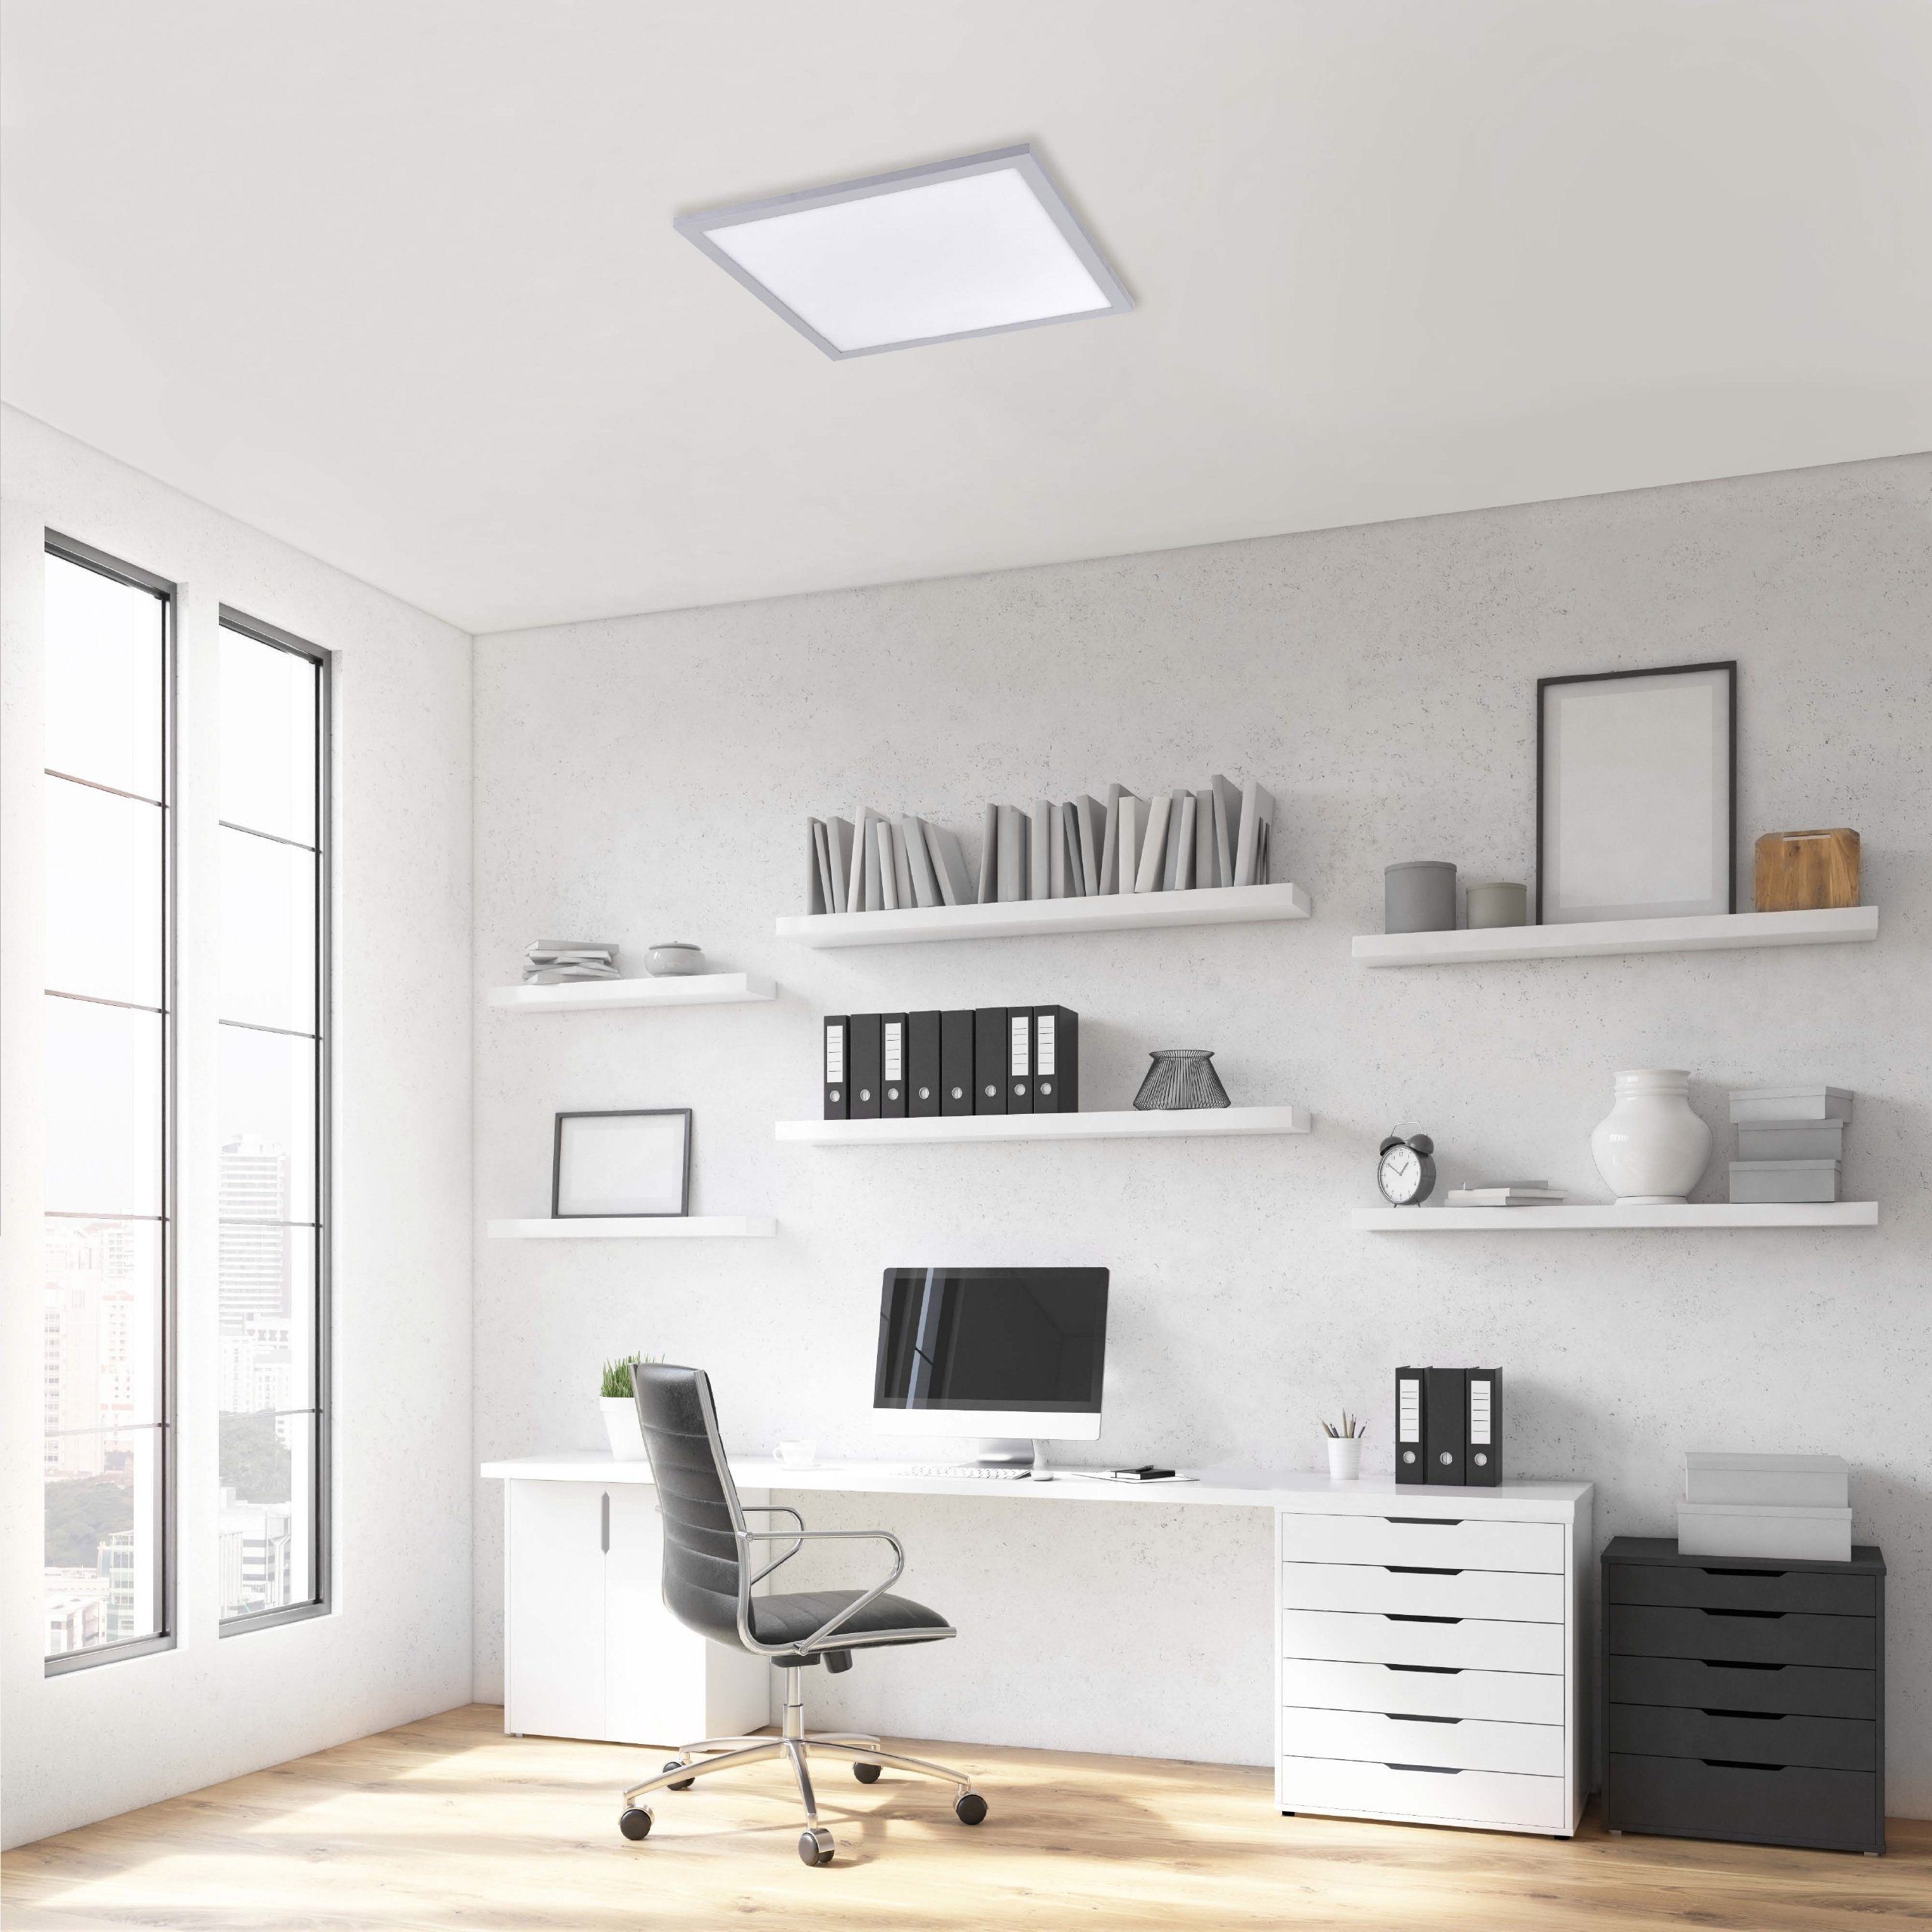 SellTec LED Deckenleuchte LED Panel Deckenlampe 45x45cm, Neutralweiß, 1xLED-Board / 23 Watt, neutralweiß, tageslichtweiß, Lichtfarbe tageslichtweiß quadratisch, Büro